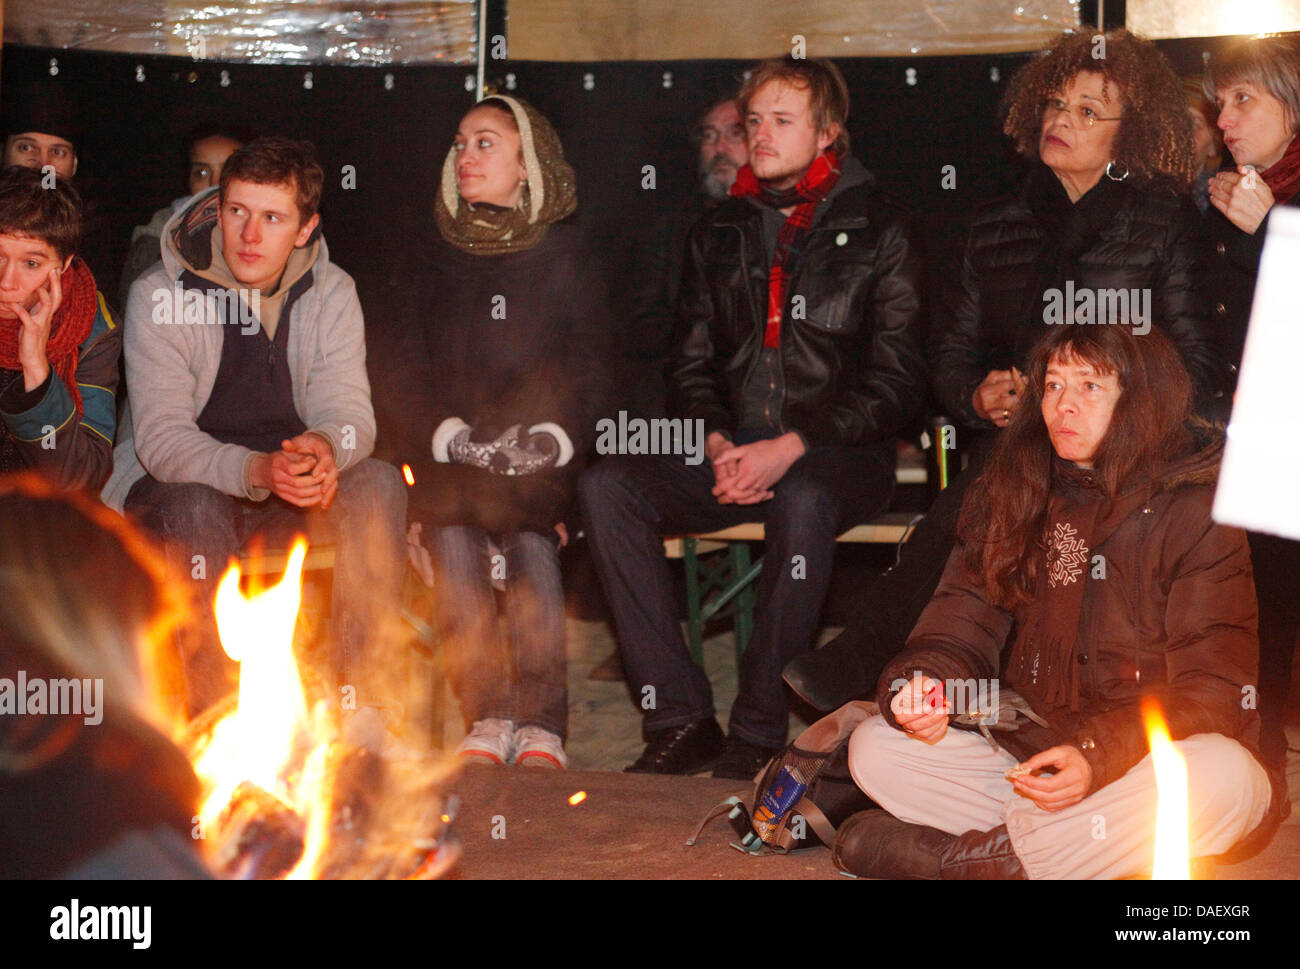 Angela Davis (C), US-amerikanischer Bürgerrechtler, sitzt im besetzen Lager in Berlin, Deutschland, 18. November 2011. Der Menschenrechtler erfuhr der Occupy-Bewegung in Berlin und sprach viel Erfahrung mit früheren Protestbewegungen während ihres Besuchs in das Lager der "Federal Press Beach". Foto: FLORIAN SCHUH Stockfoto